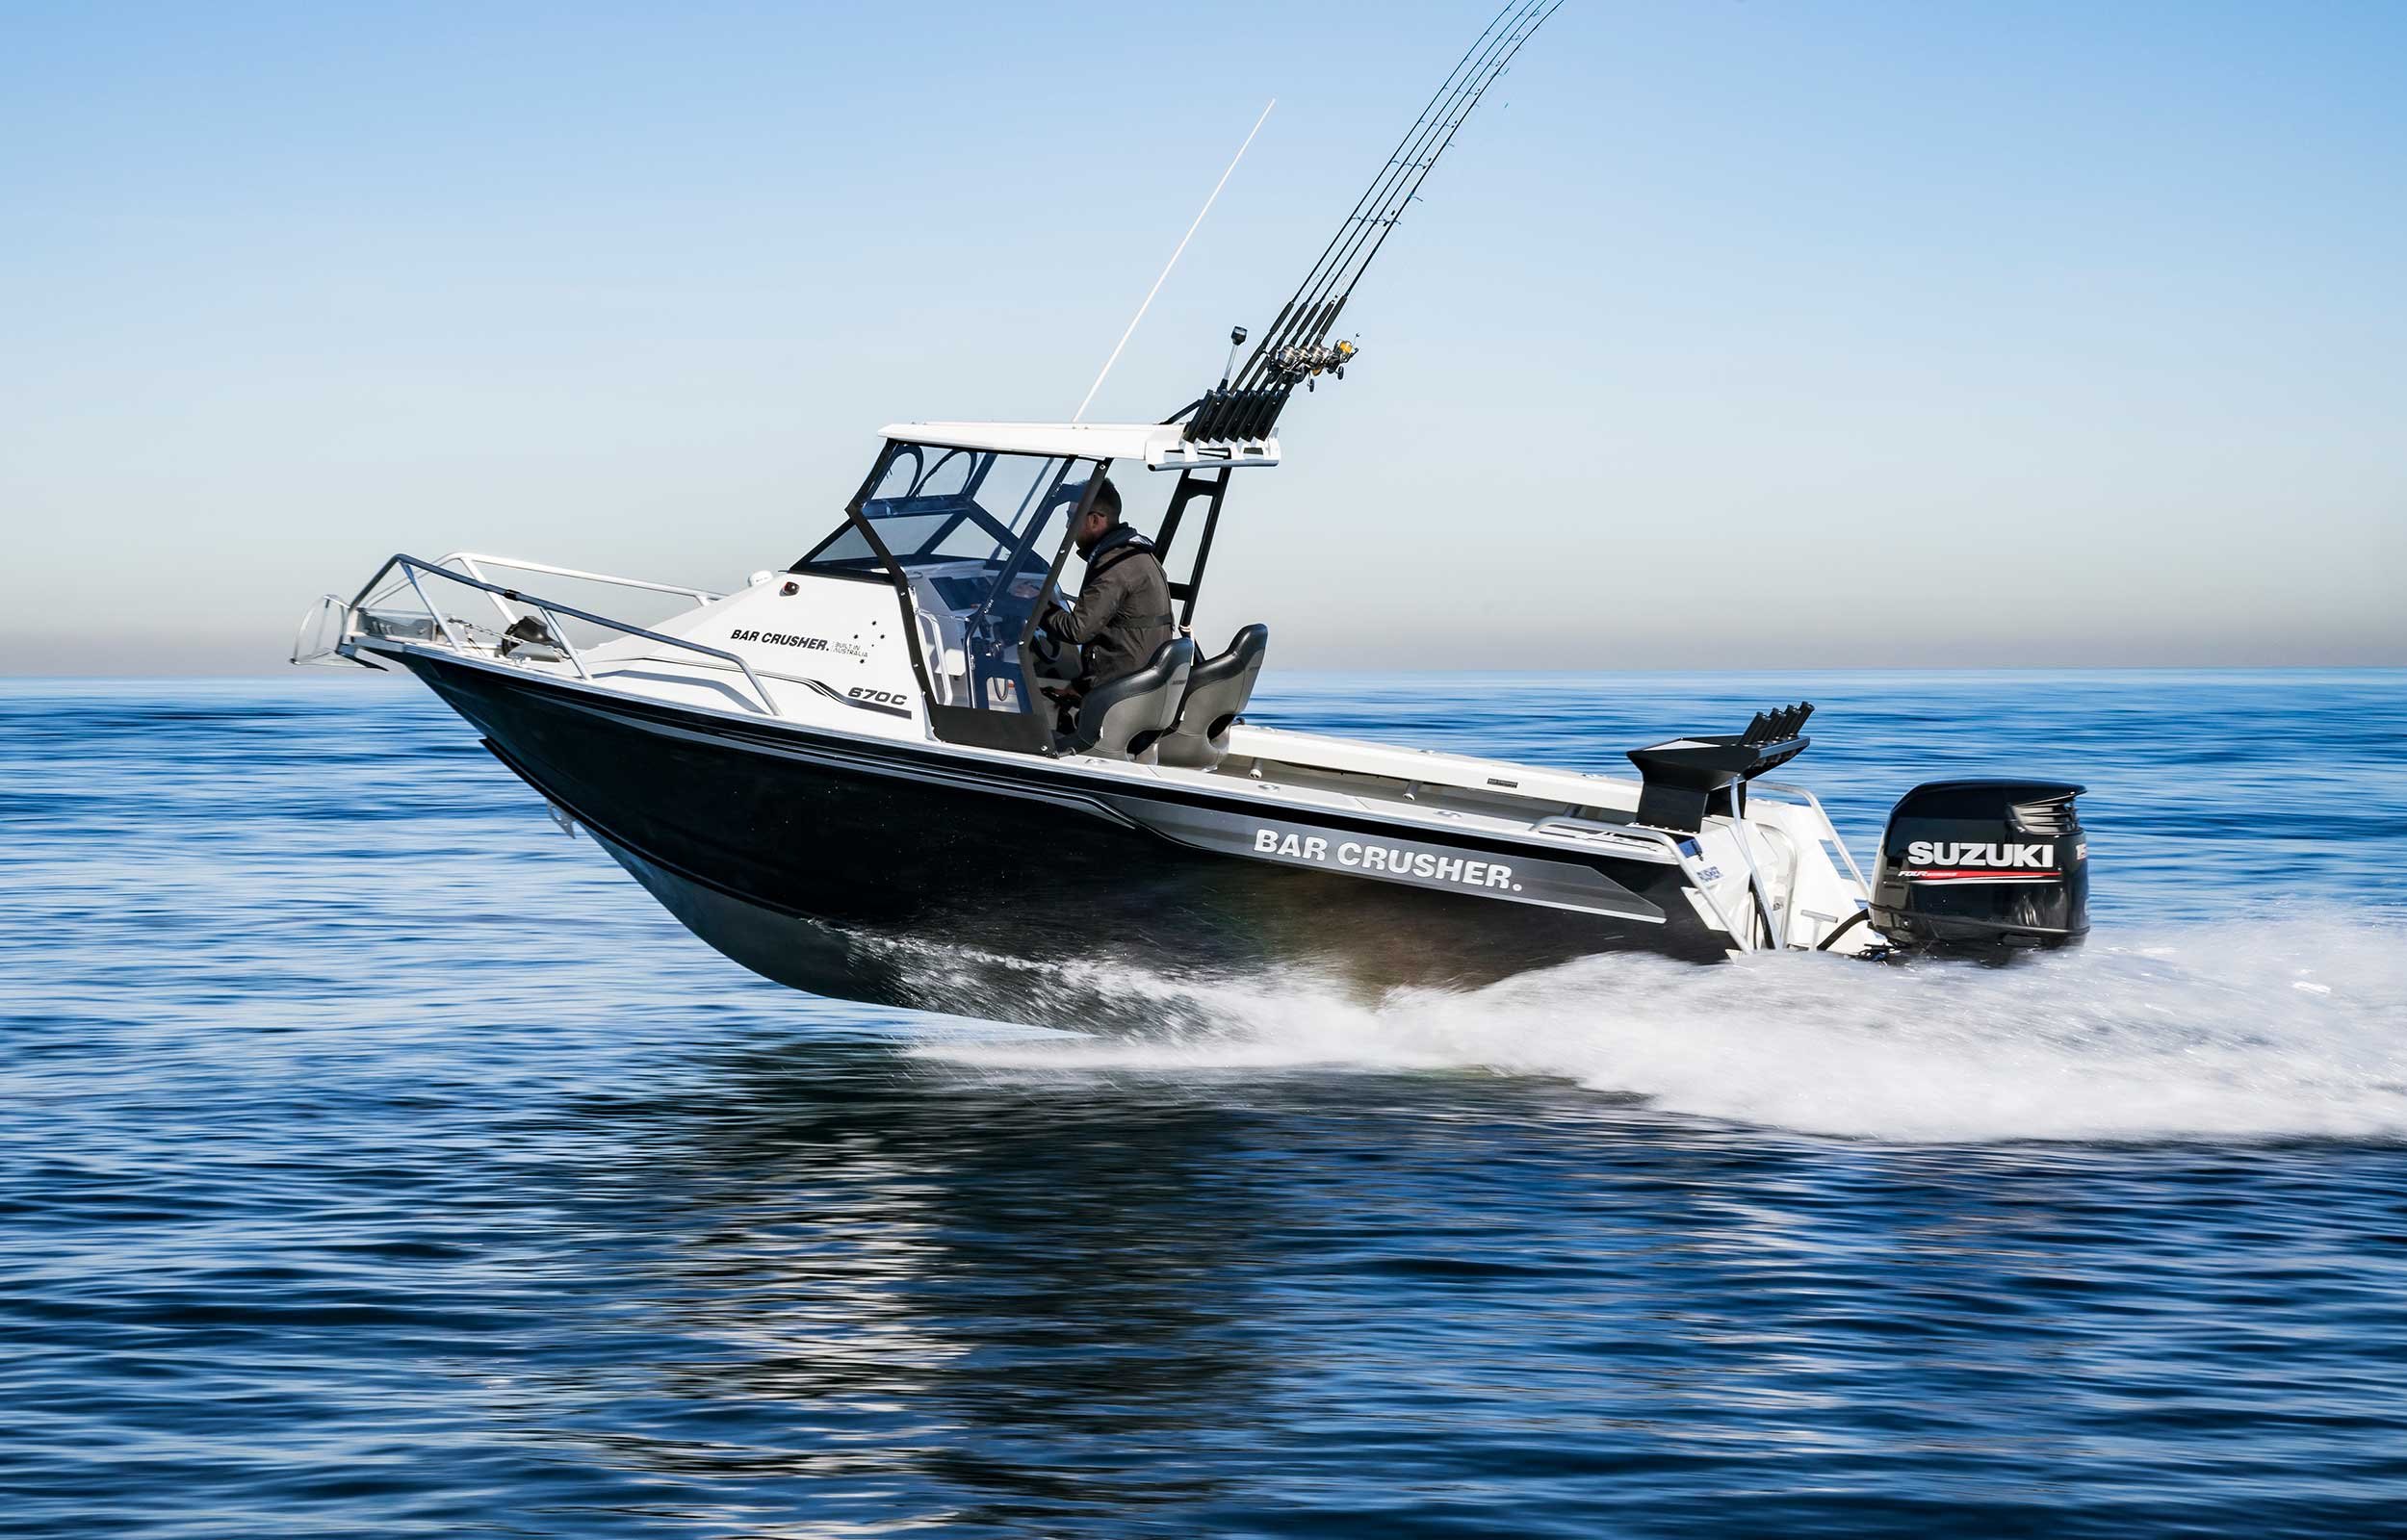 models-bar-crusher-670c-plate-aluminium-fishing-boat-2019-web-7